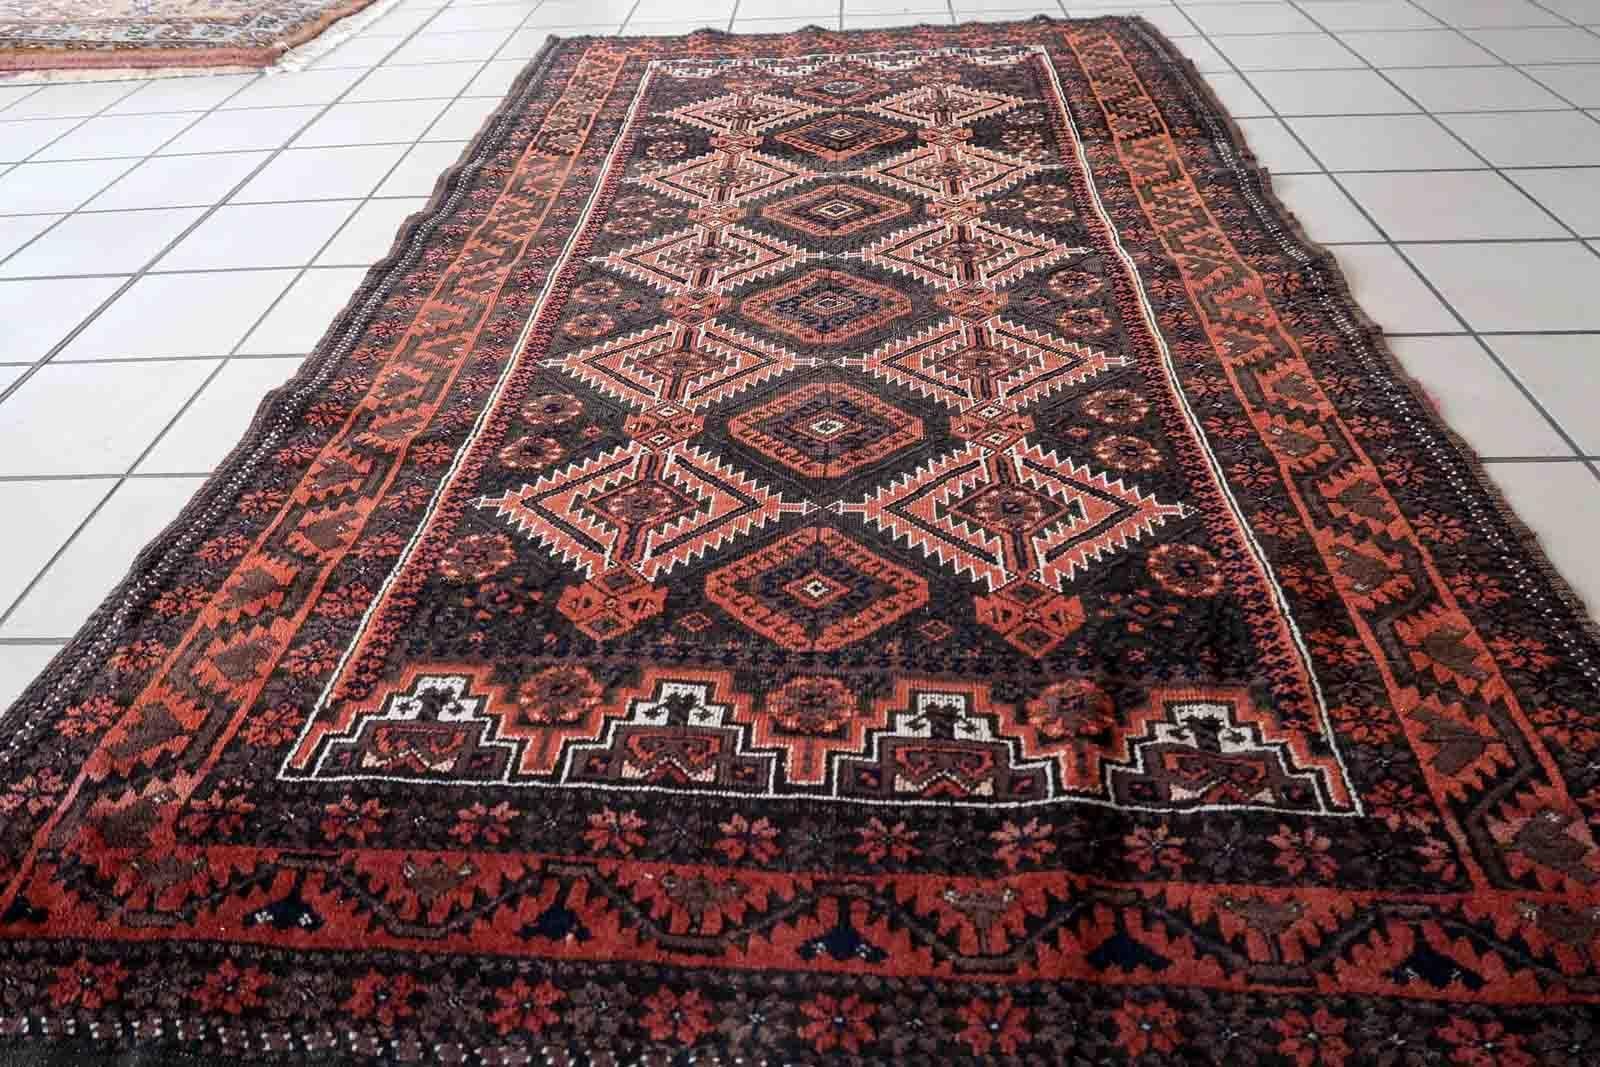 Handgefertigter antiker afghanischer Belutsch-Teppich in traditionellem Stammesdesign. Der Teppich stammt vom Anfang des 20. Jahrhunderts und ist im Originalzustand, er hat einen minimalen Niederflor.

-Zustand: original, etwas niedrig,

-CIRCA: